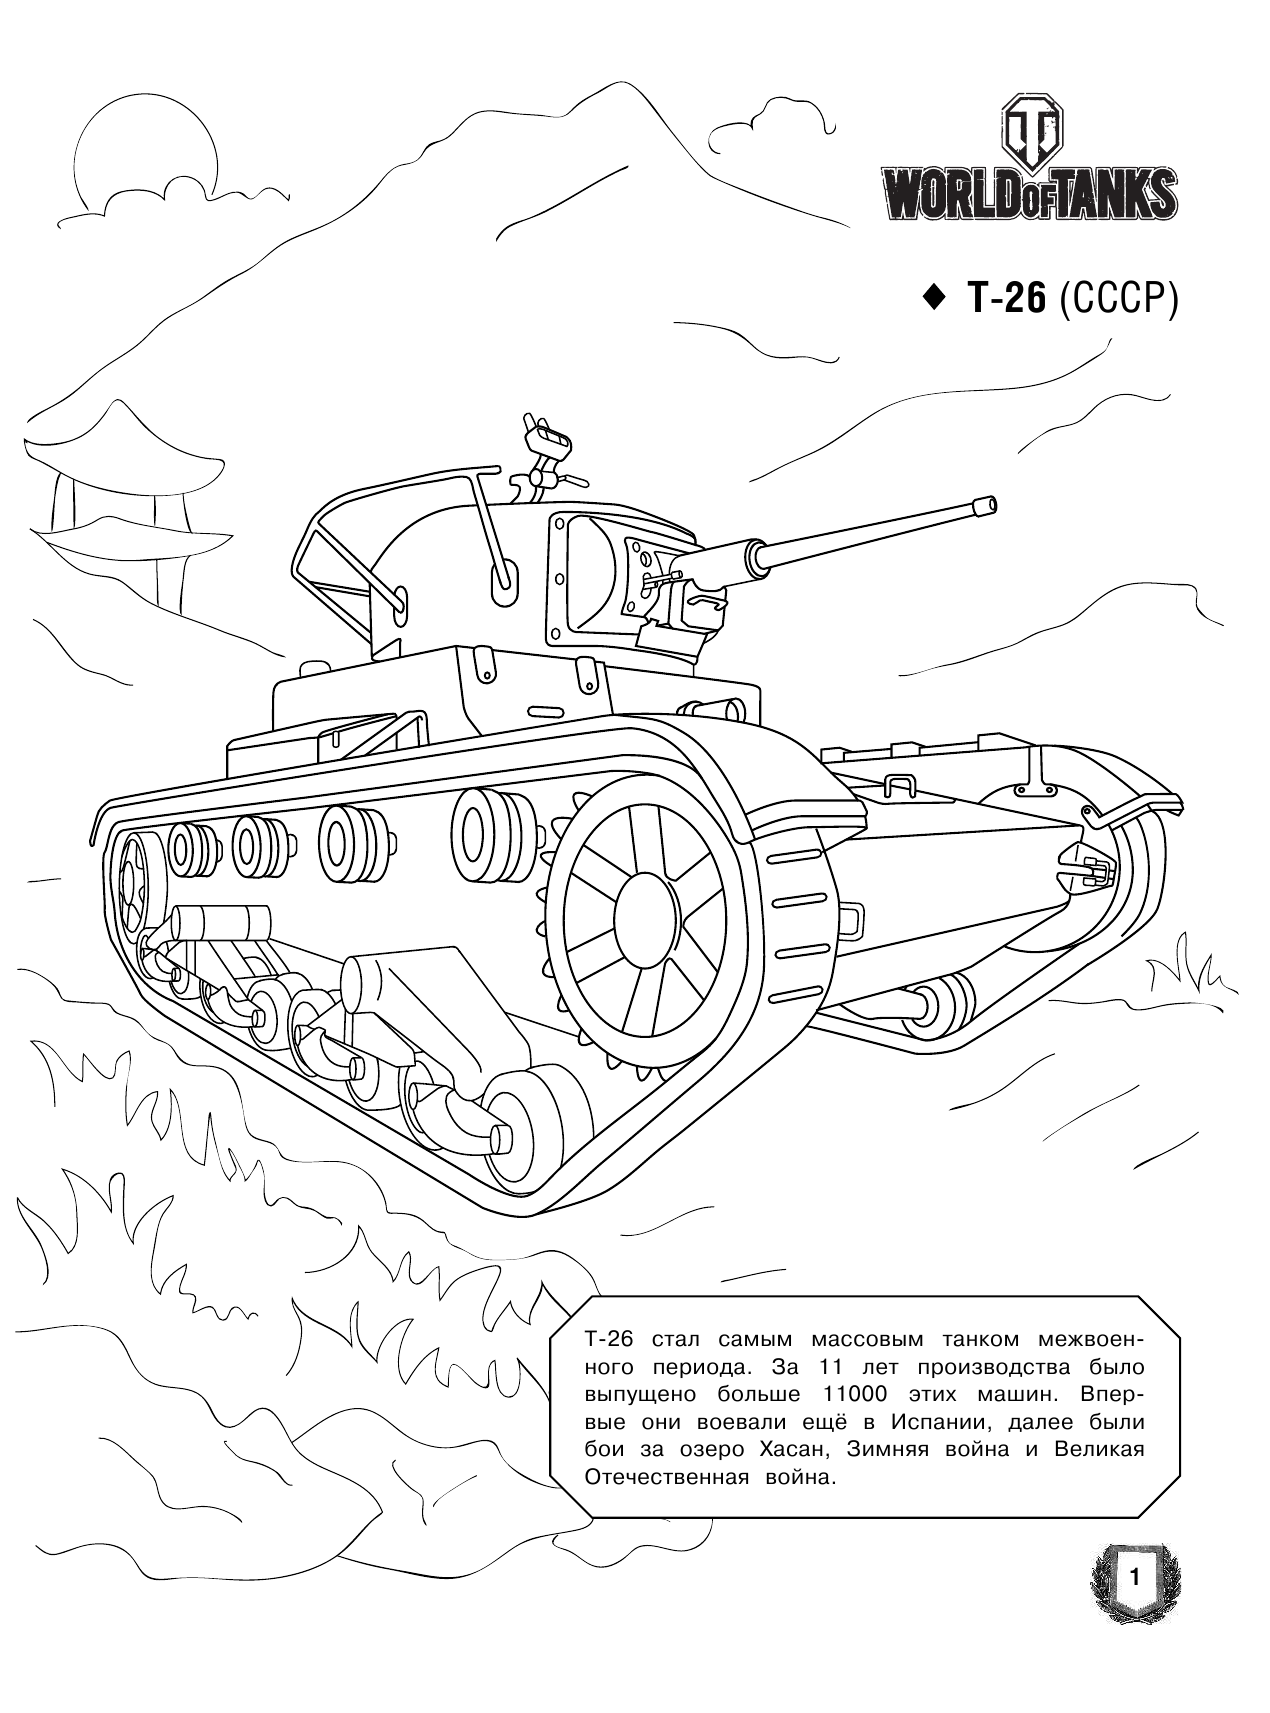  Большая раскраска. Советская военная техника - страница 2